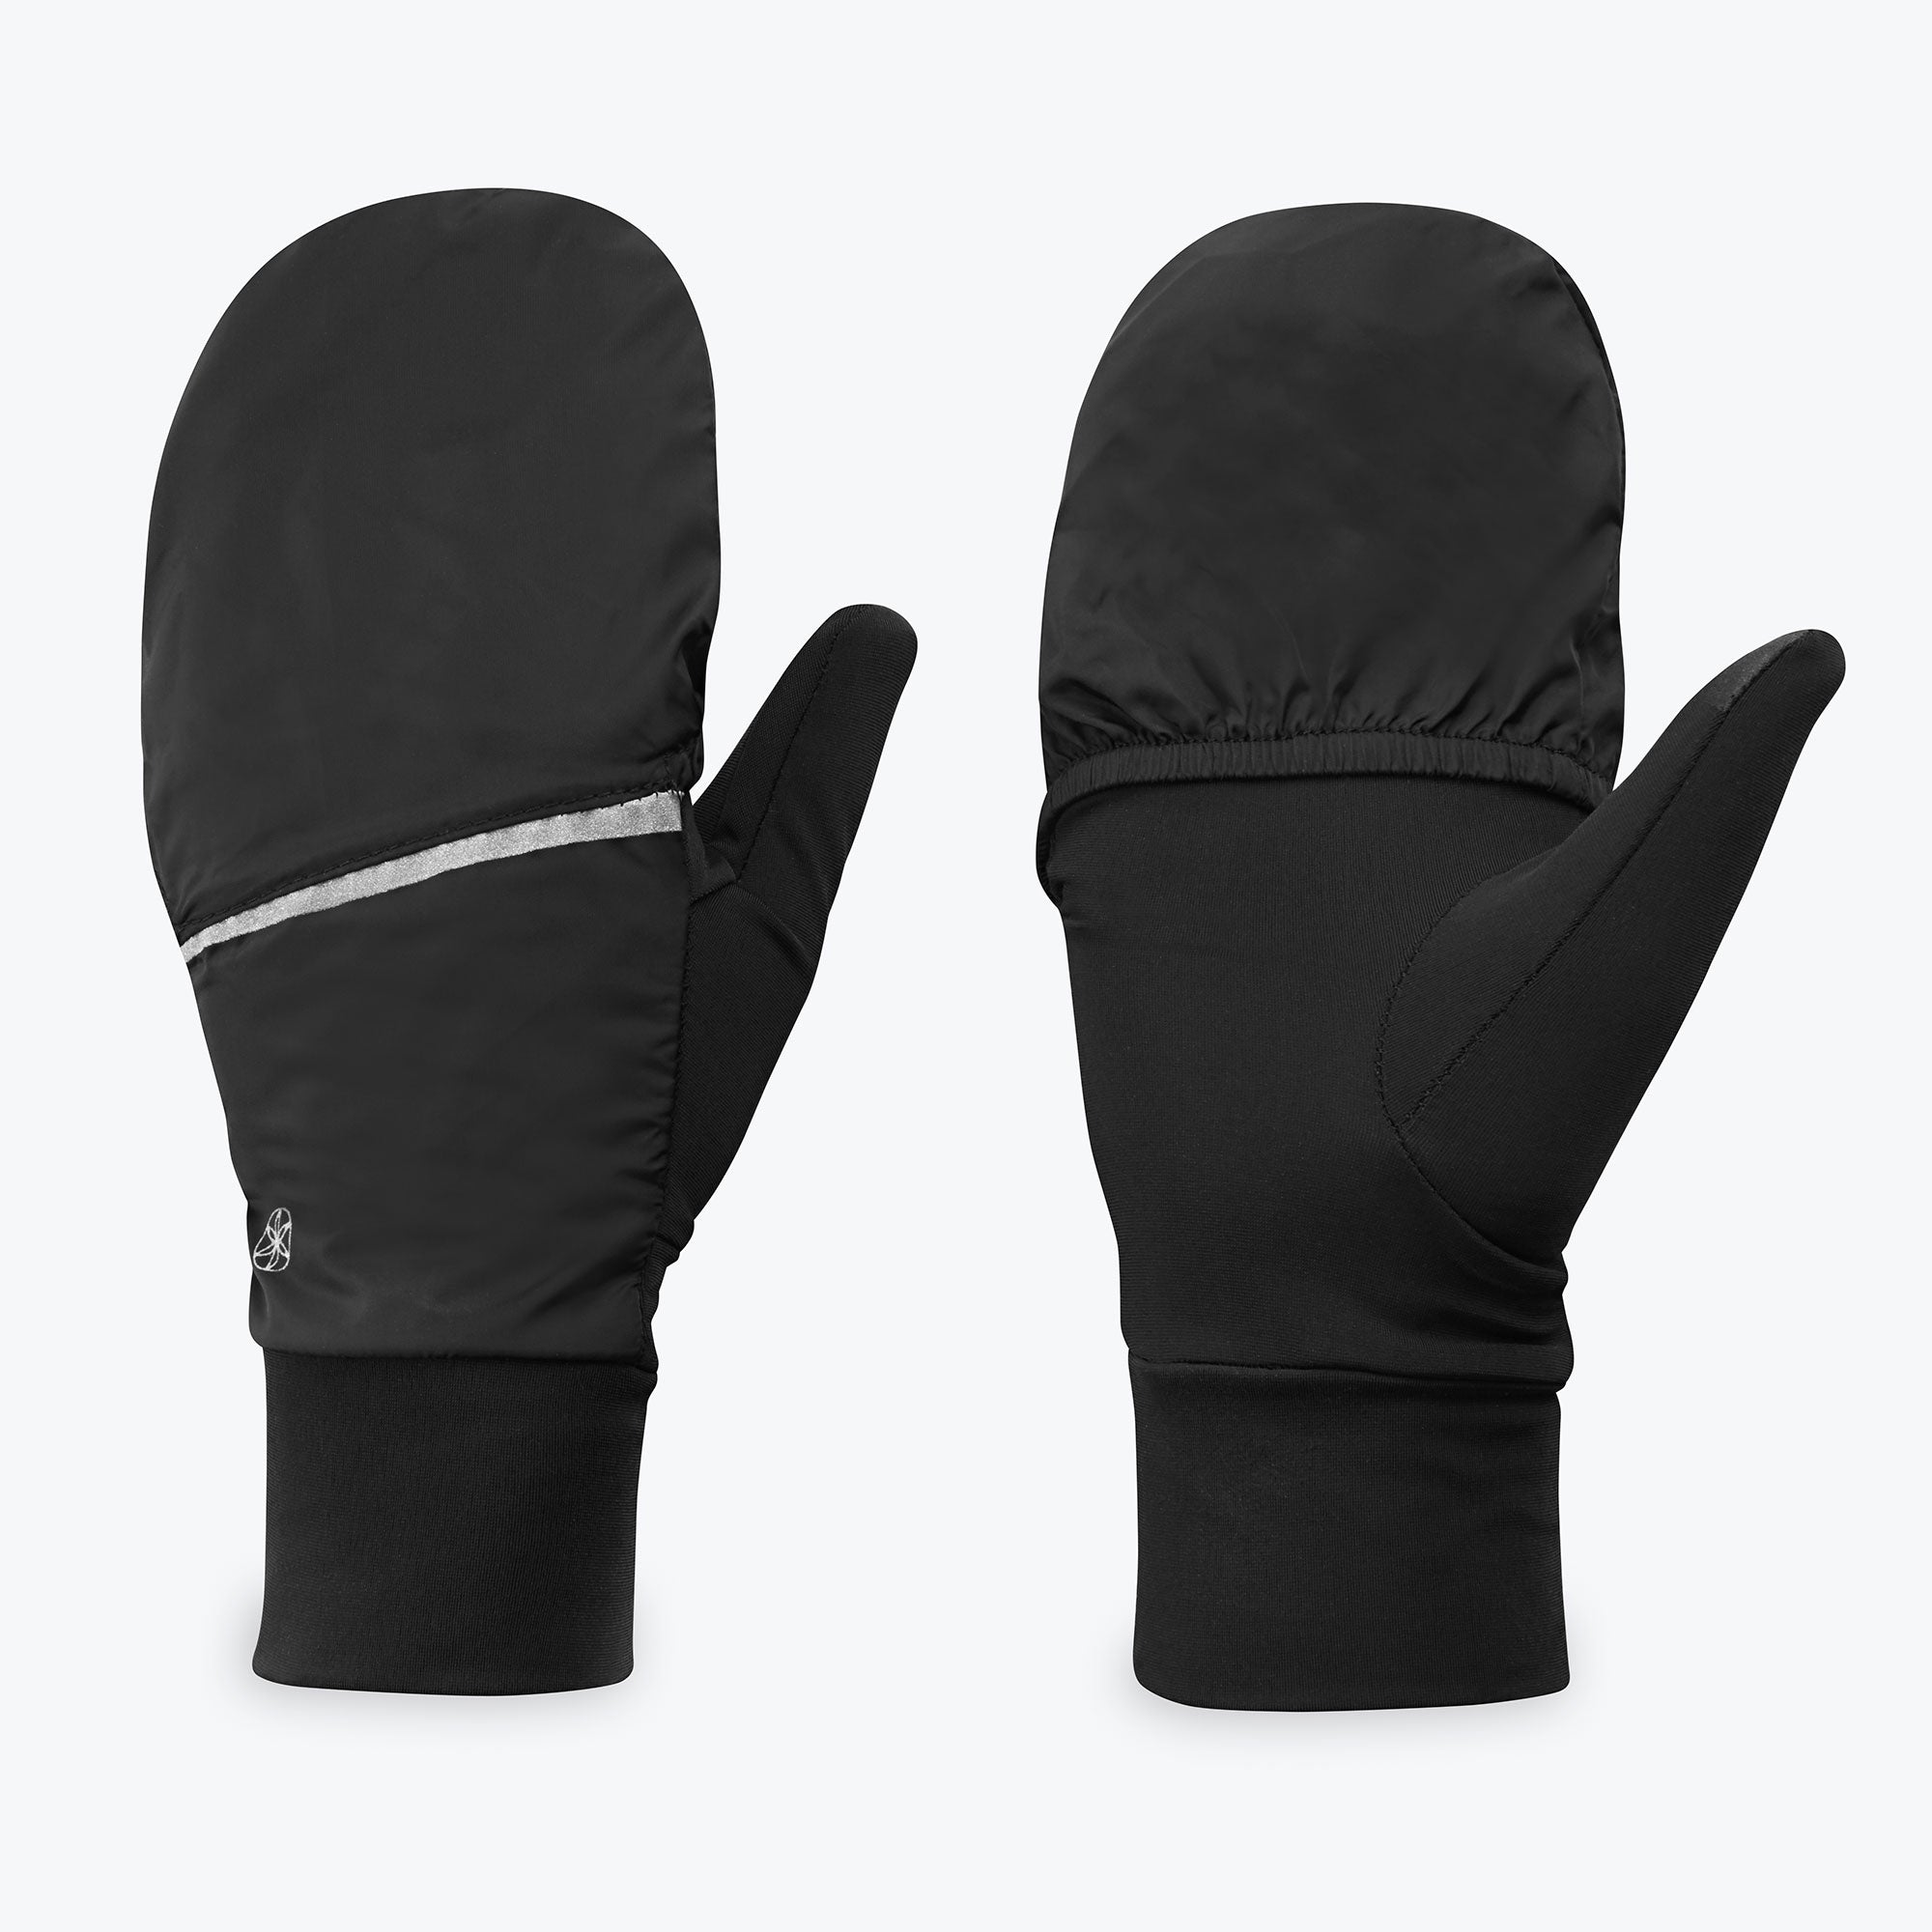 Women's Lightweight Convertible Running Gloves - Gaiam